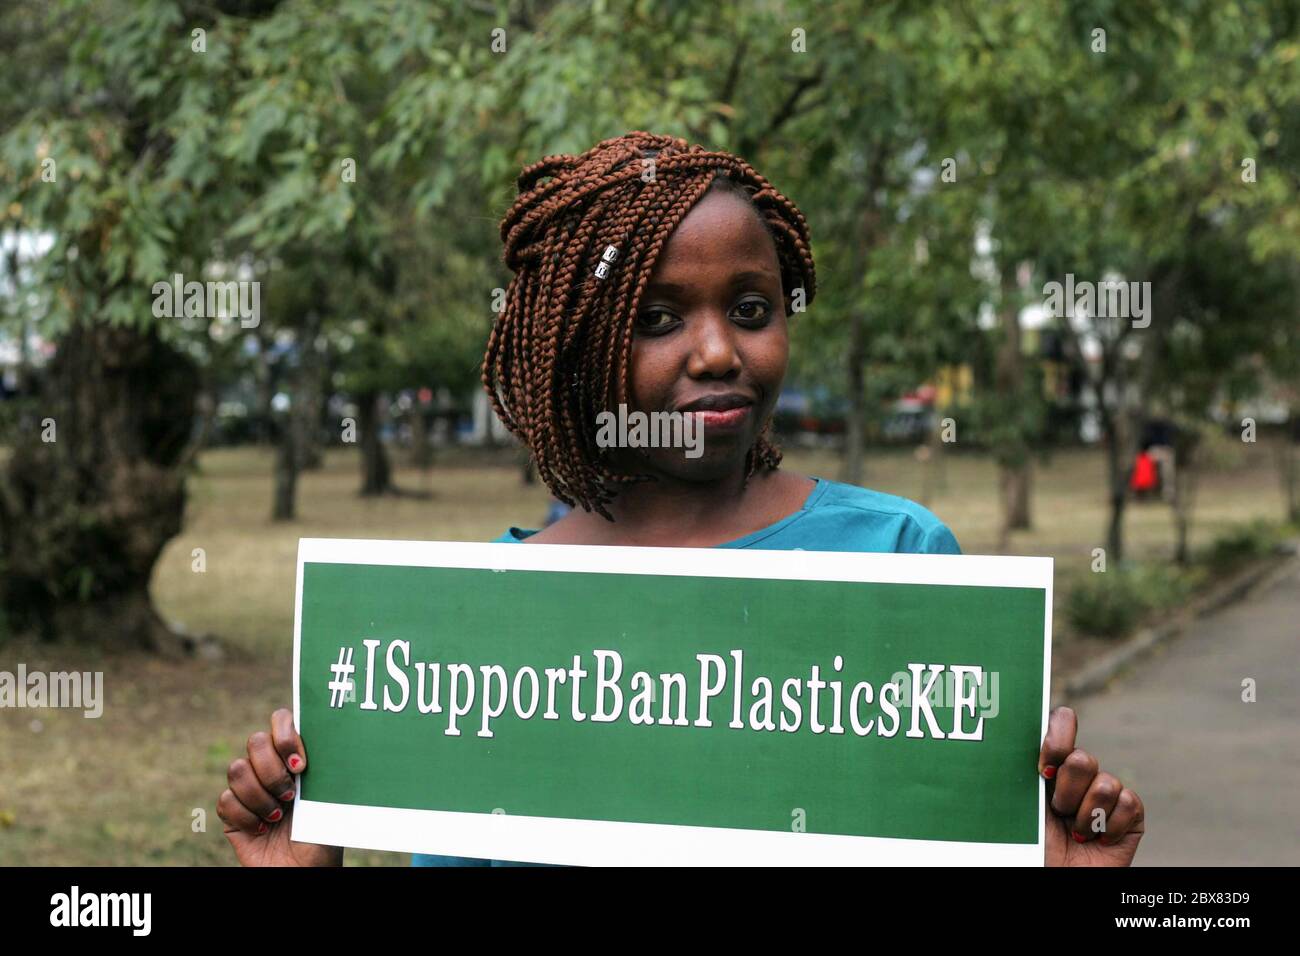 Eine Frau hält ein Plakat mit der Aufschrift "Ich unterstütze das Verbot von Plastics" während der Kampagne zum Verbot der einmaligen Verwendung von Plastiktüten. Während des Weltumwelttags begann Kenia mit der Einführung eines Verbots der einmaligen Verwendung von Kunststoff in allen Schutzgebieten. Frühere Plastiktüten Verbot wurde als erfolgreich von vielen gefeiert. Stockfoto